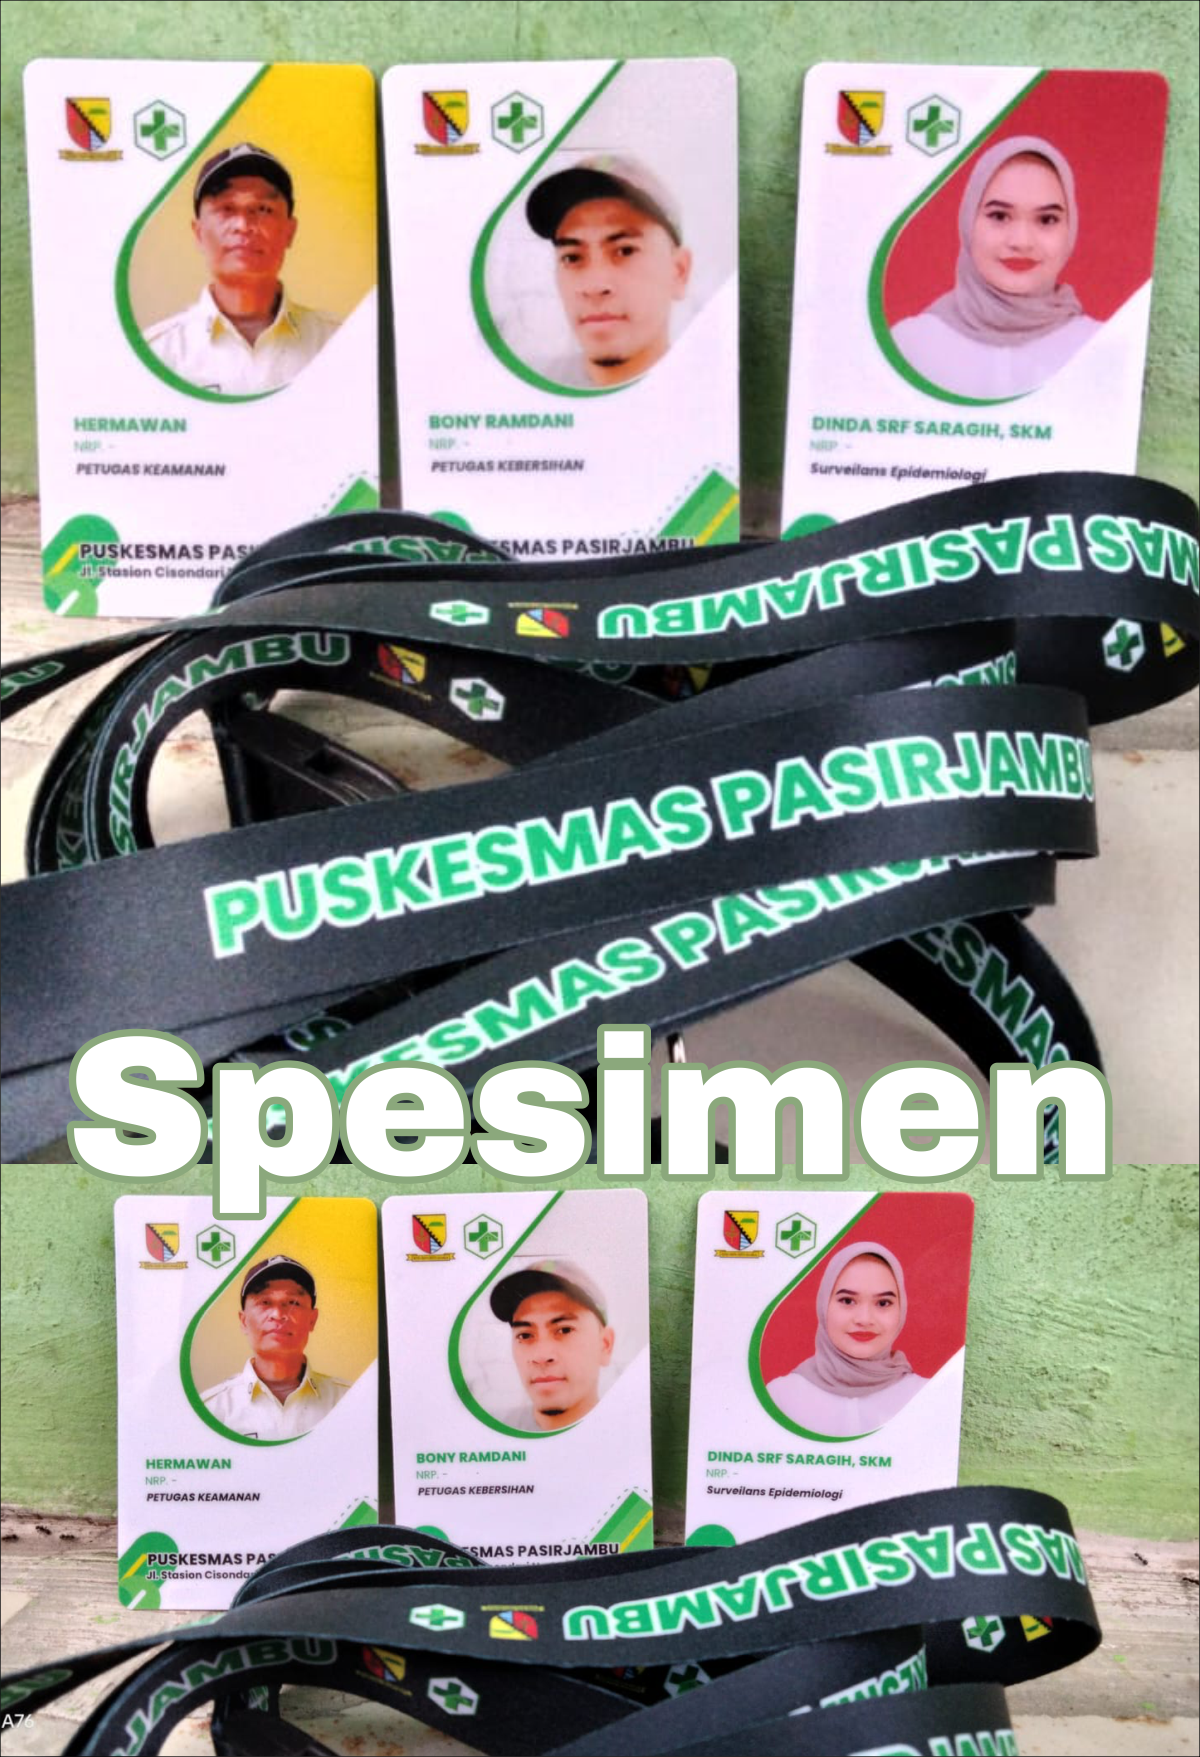 Contoh ID Card Terbaru dari Soreangkupod - Puskesmas Pasirjambu Ciwidey Kabupaten Bandung